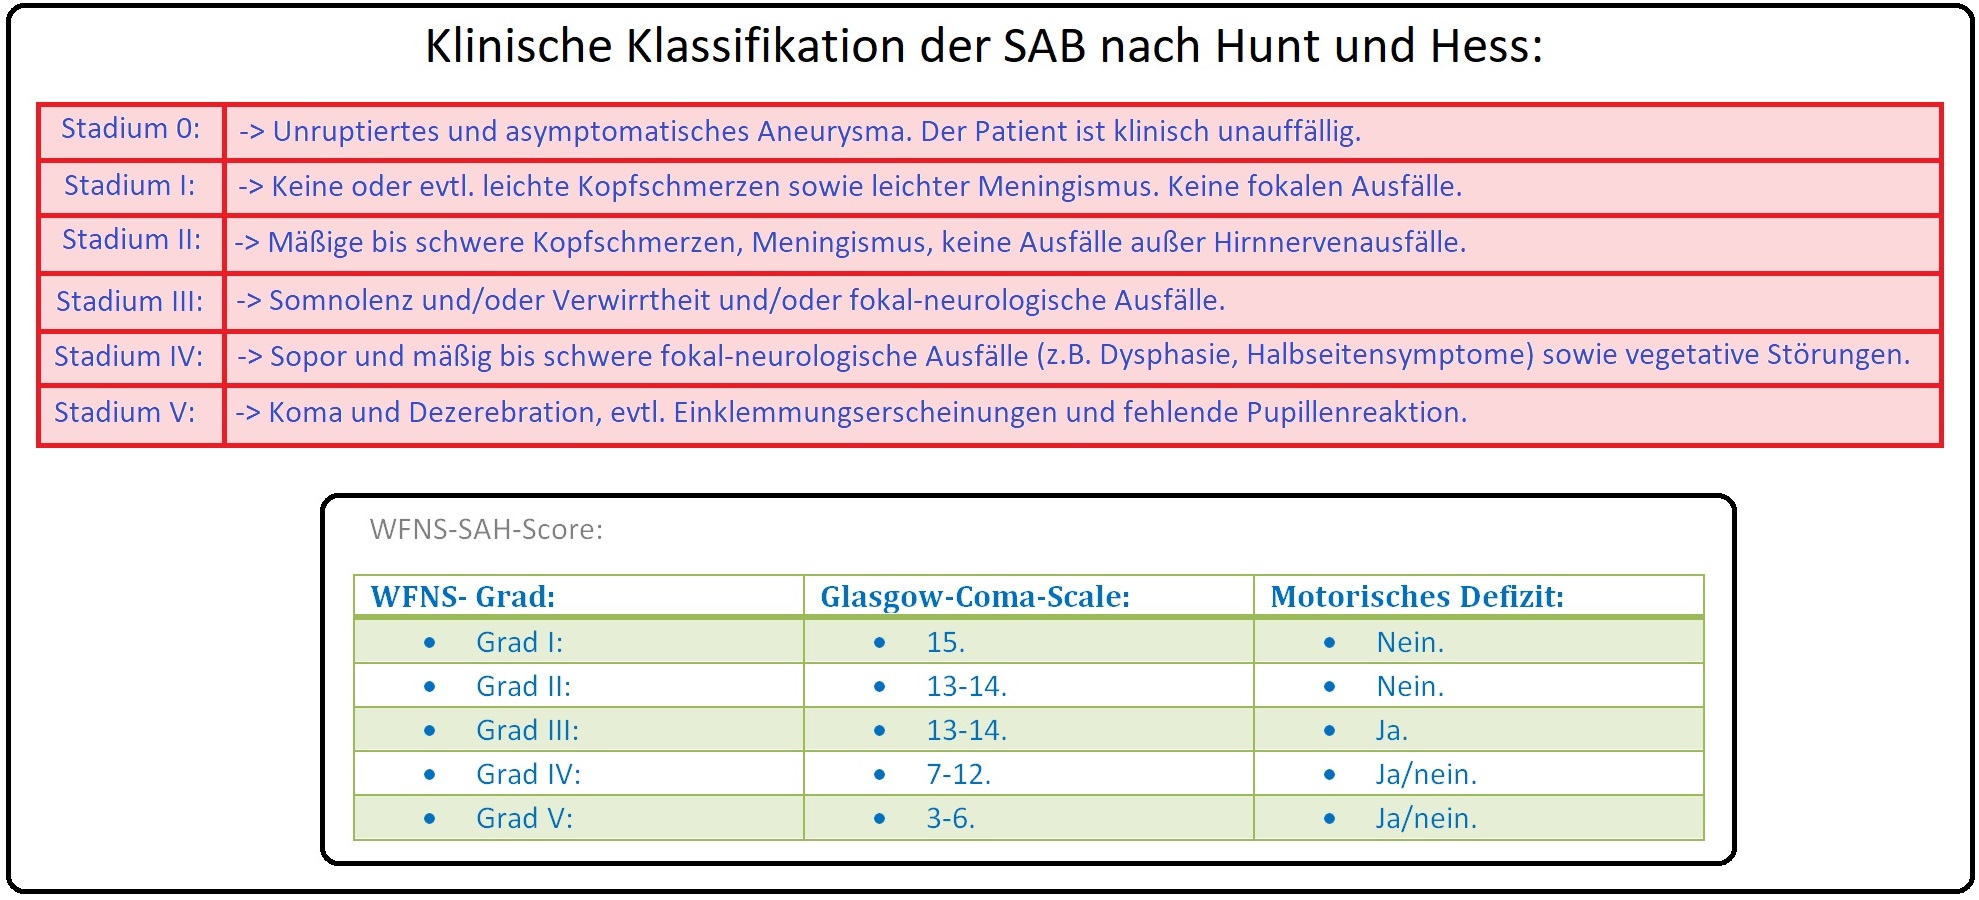 093 Klinische Klassifikation der SAB nach Hunt und Hess